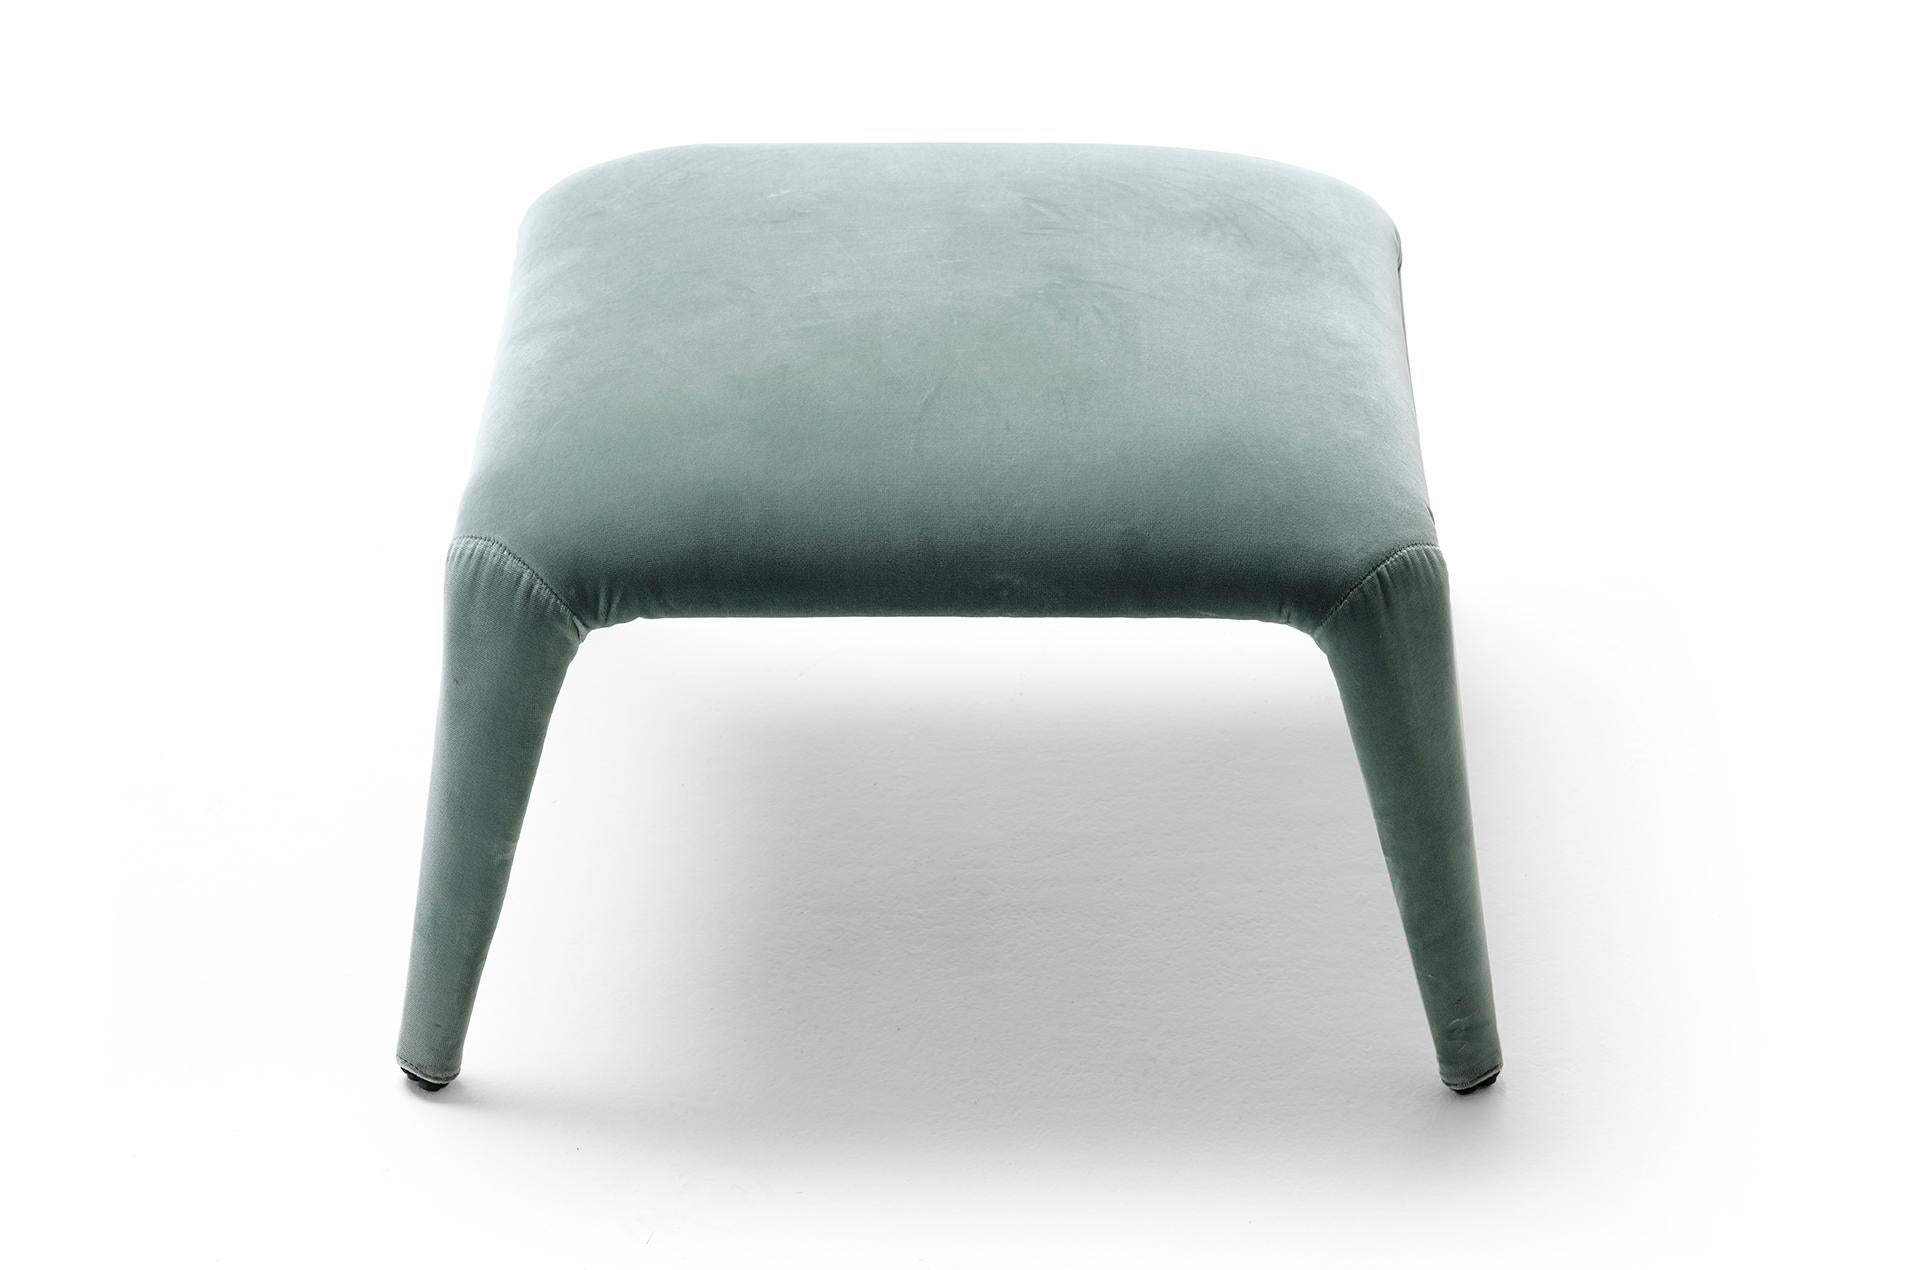 Le pouf Nova est conçu pour aller avec notre chaise longue homonyme. Il s'agit d'un pouf en textile léger, au look précieux, dont la housse en tissu est entièrement amovible. La structure interne est un squelette minimal de tubes métalliques qui